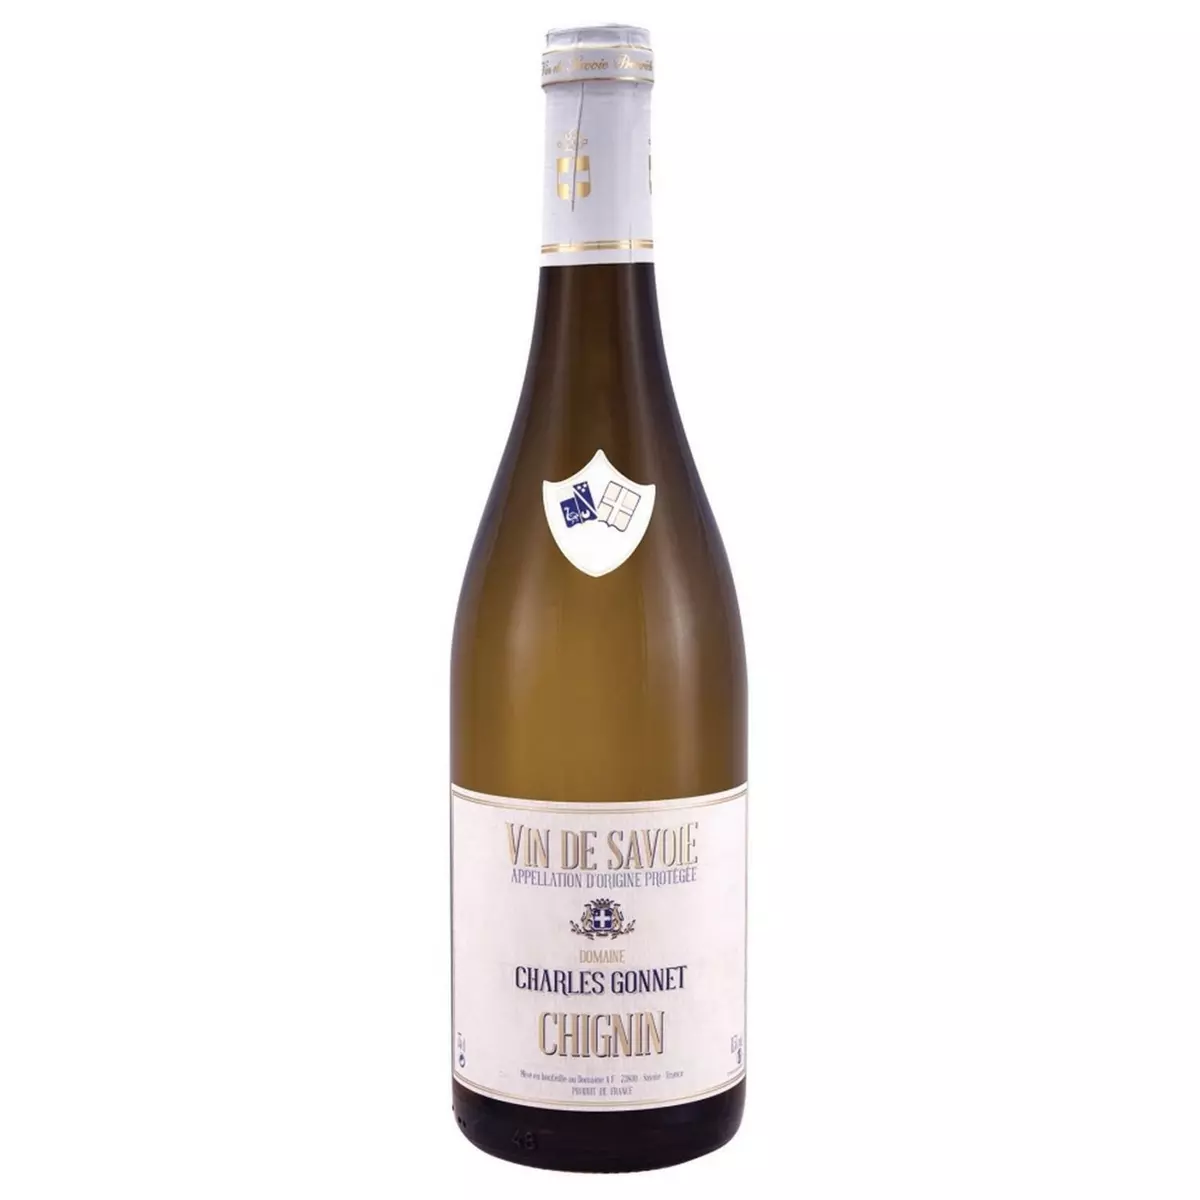 ADRIEN VACHER AOP Vin de Savoie Chignin Charles Gonnet blanc 75cl